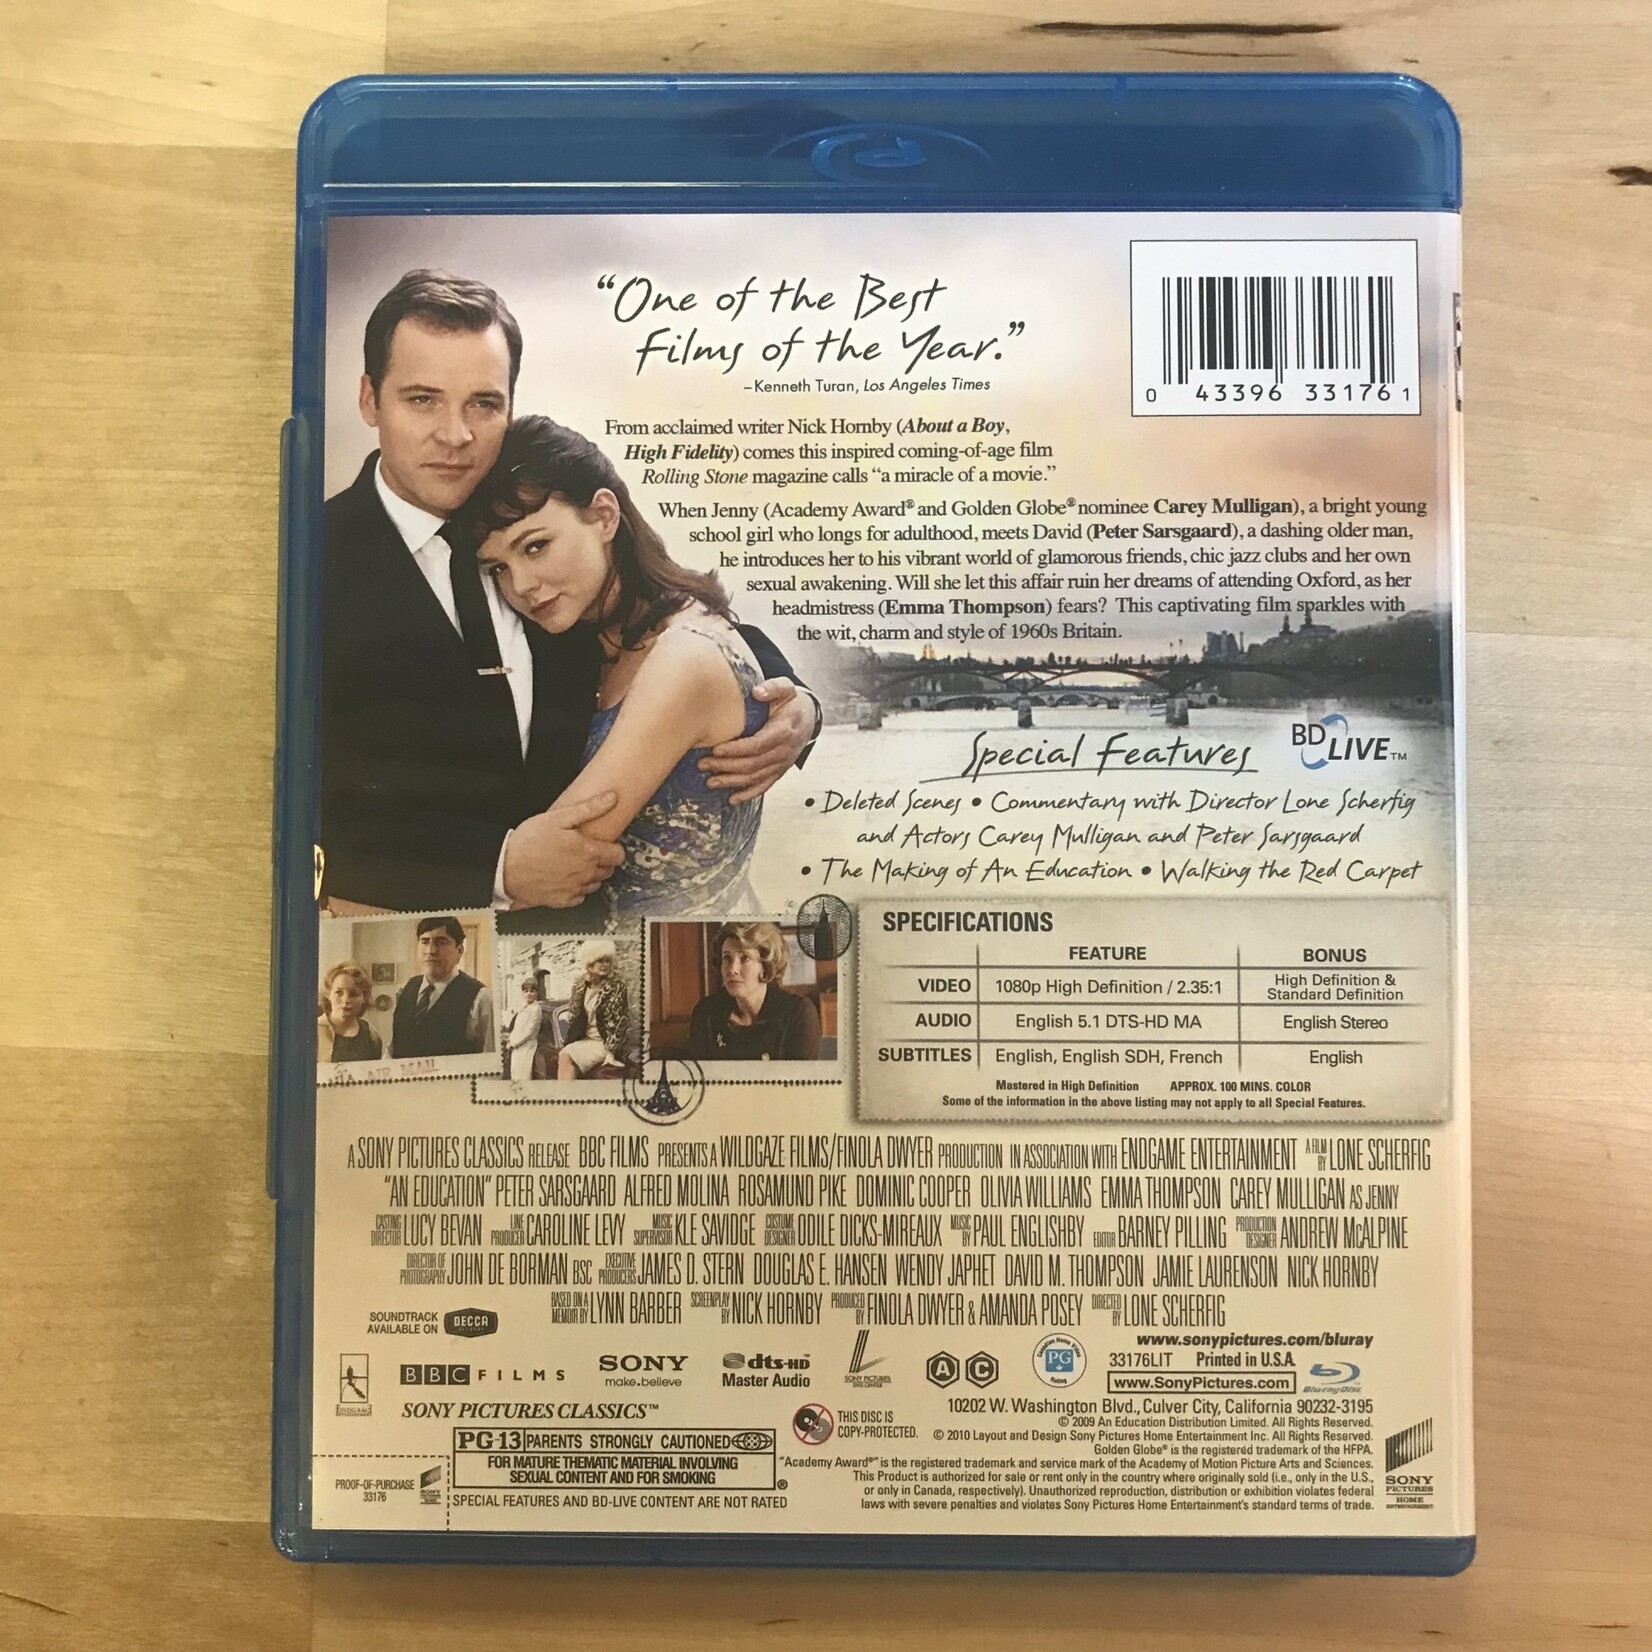 An Eduation - Blu-Ray (USED)